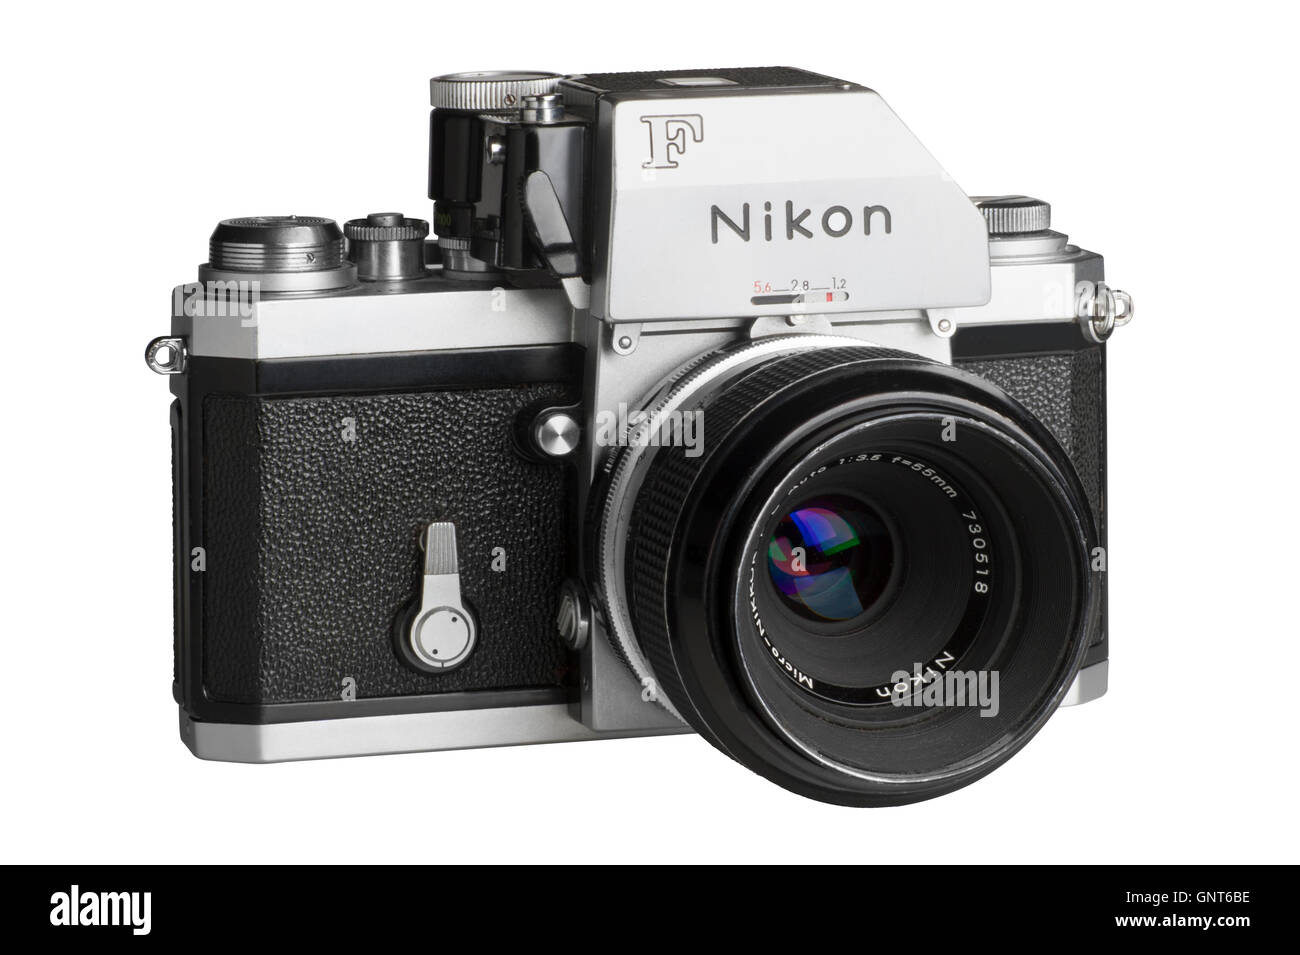 1971 Nikon F con Photomic FTn testa di dosaggio, 55mm Micro-Nikkor attaccato. Rivolto verso destra Foto Stock